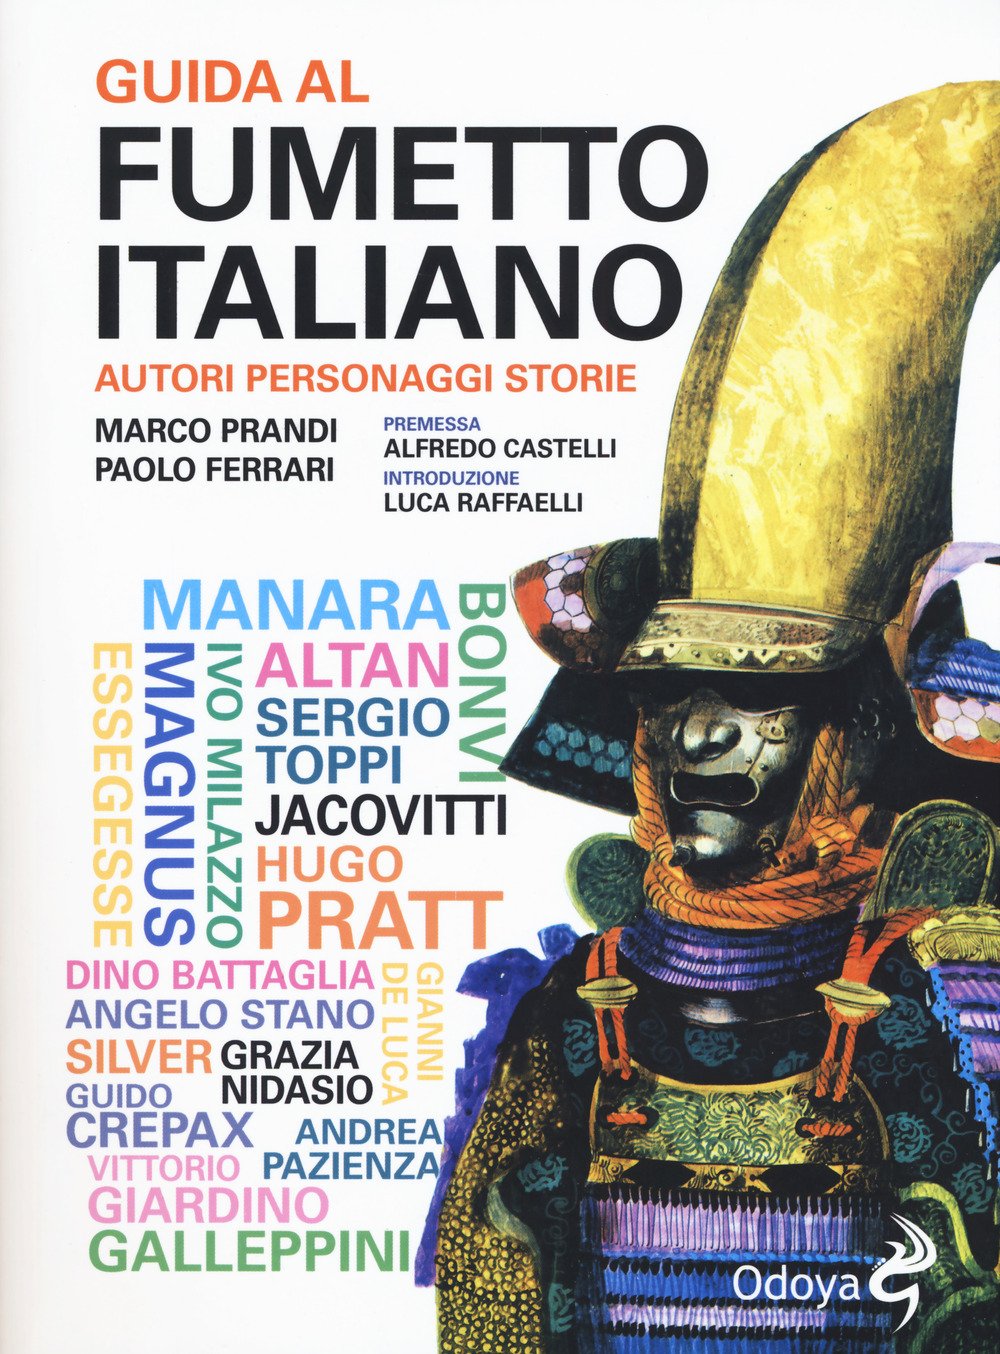 Libri Paolo Ferrari / Marco Prandi - Guida Al Fumetto Italiano. Autori Personaggi Storie NUOVO SIGILLATO, EDIZIONE DEL 29/03/2018 SUBITO DISPONIBILE